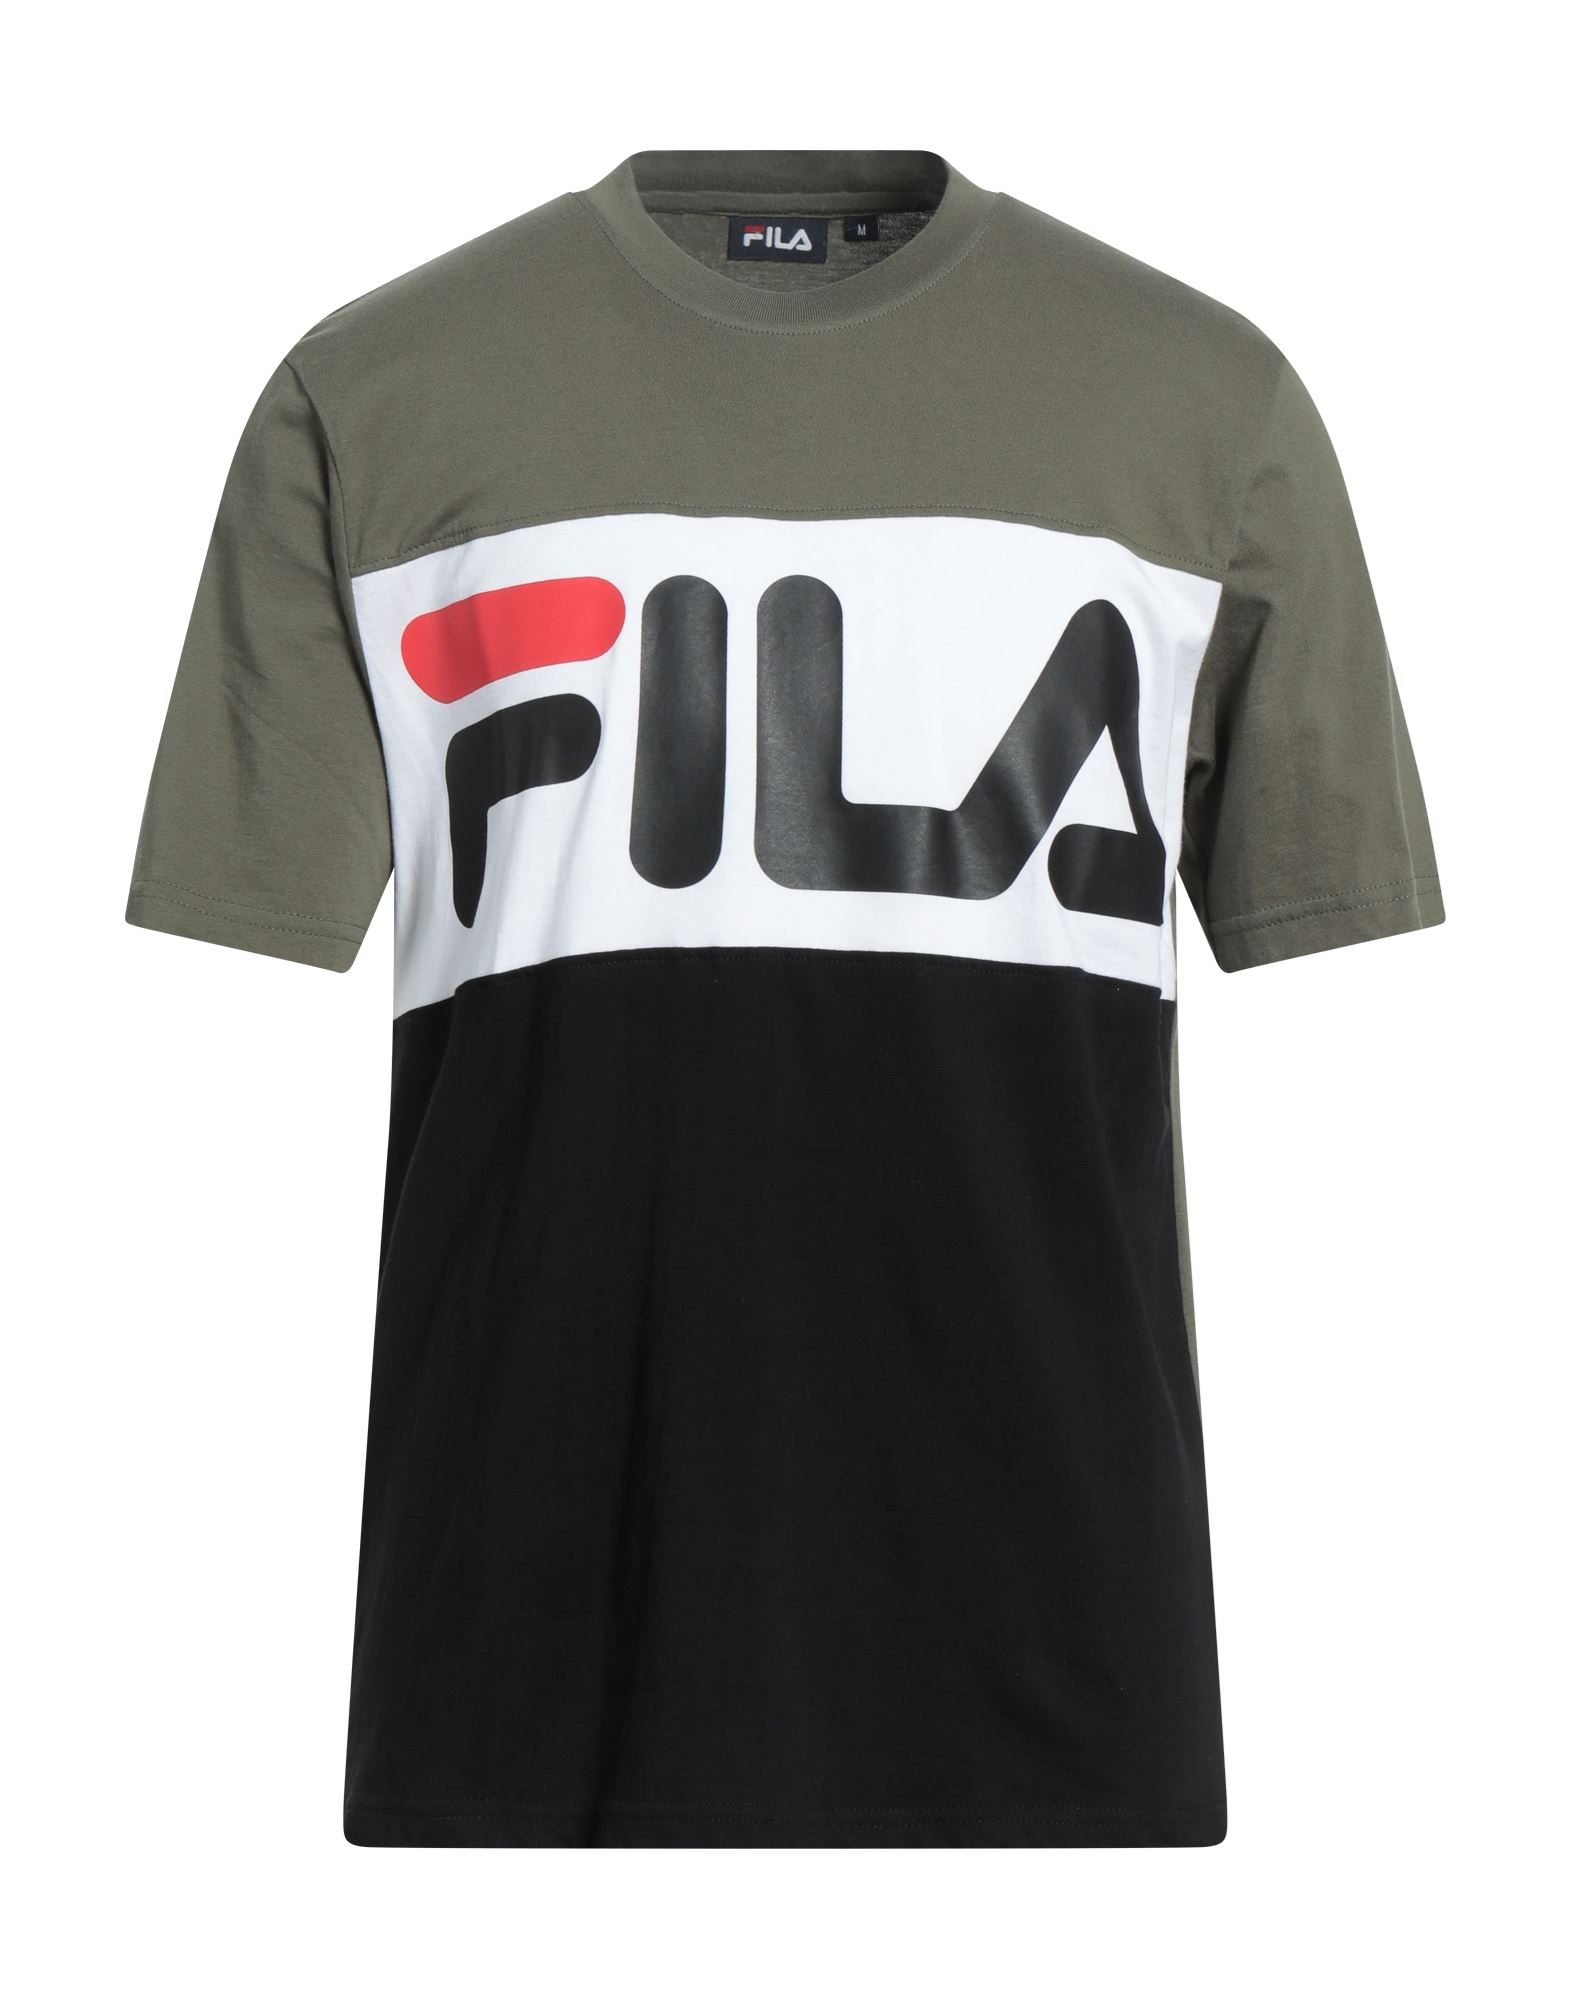 FILA T-shirts Herren Militärgrün von FILA